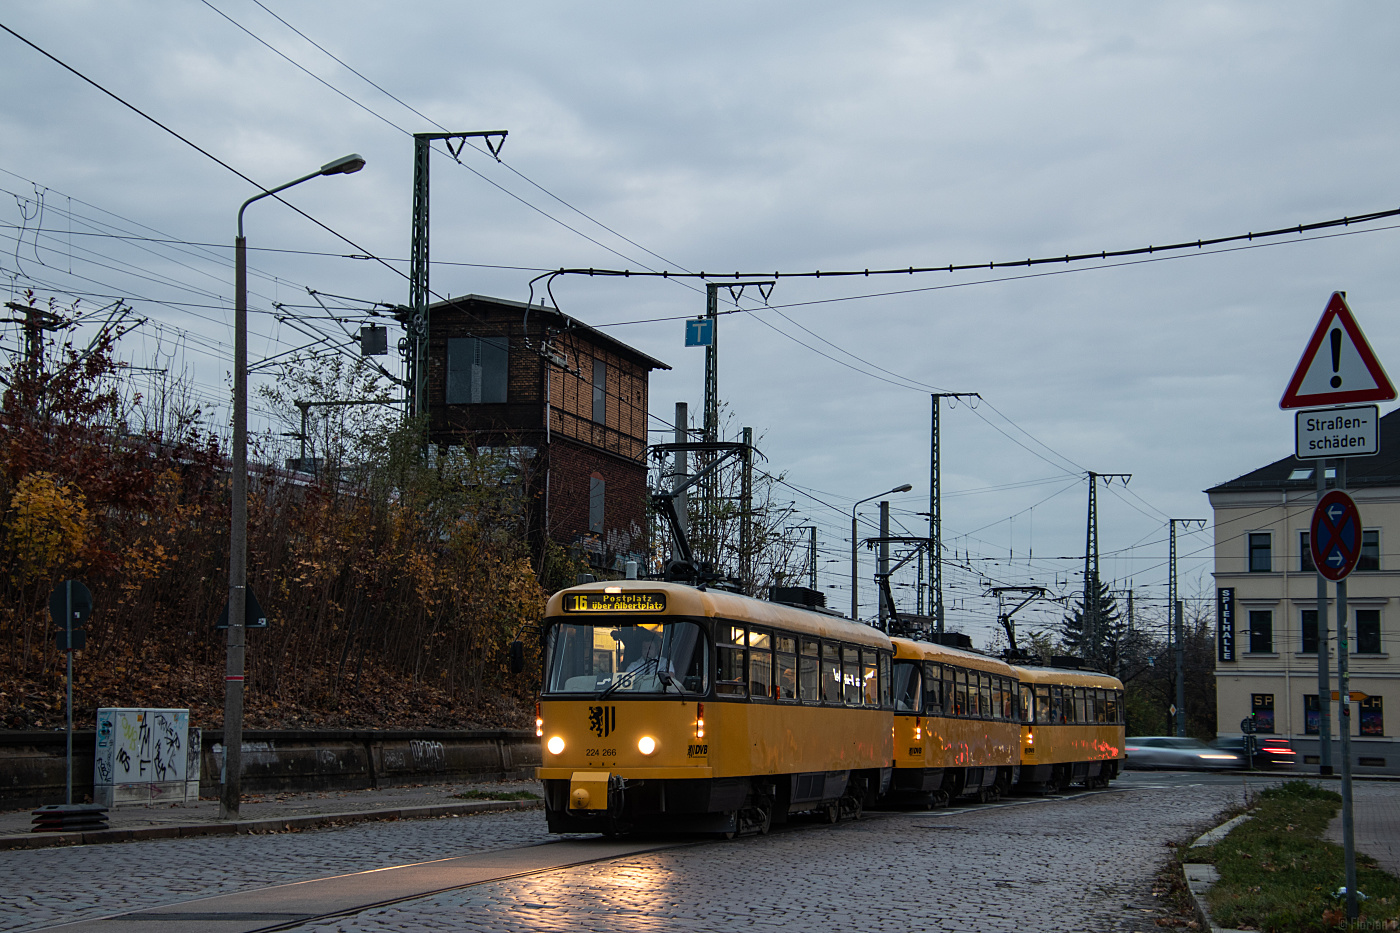 Tatra T4D-MT #224 266